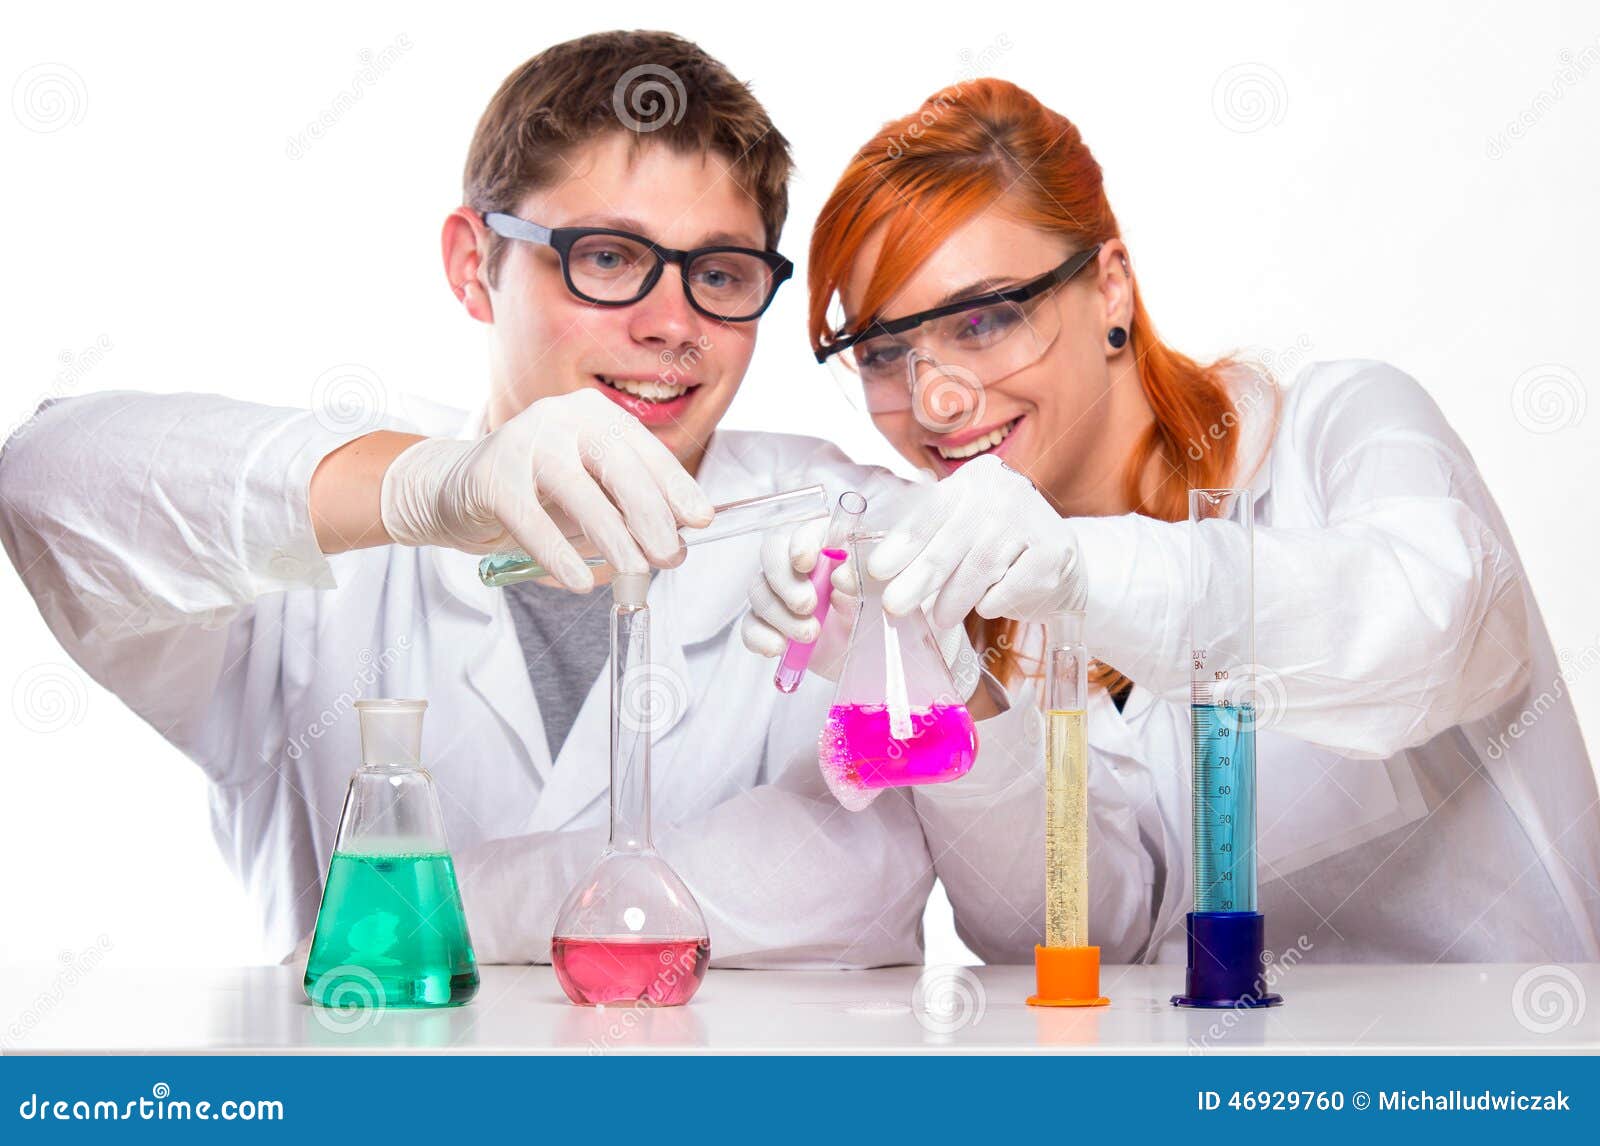 Человек который проводит опыты. Студенты химики. Студенты в химической лаборатории фото. Братья химики.